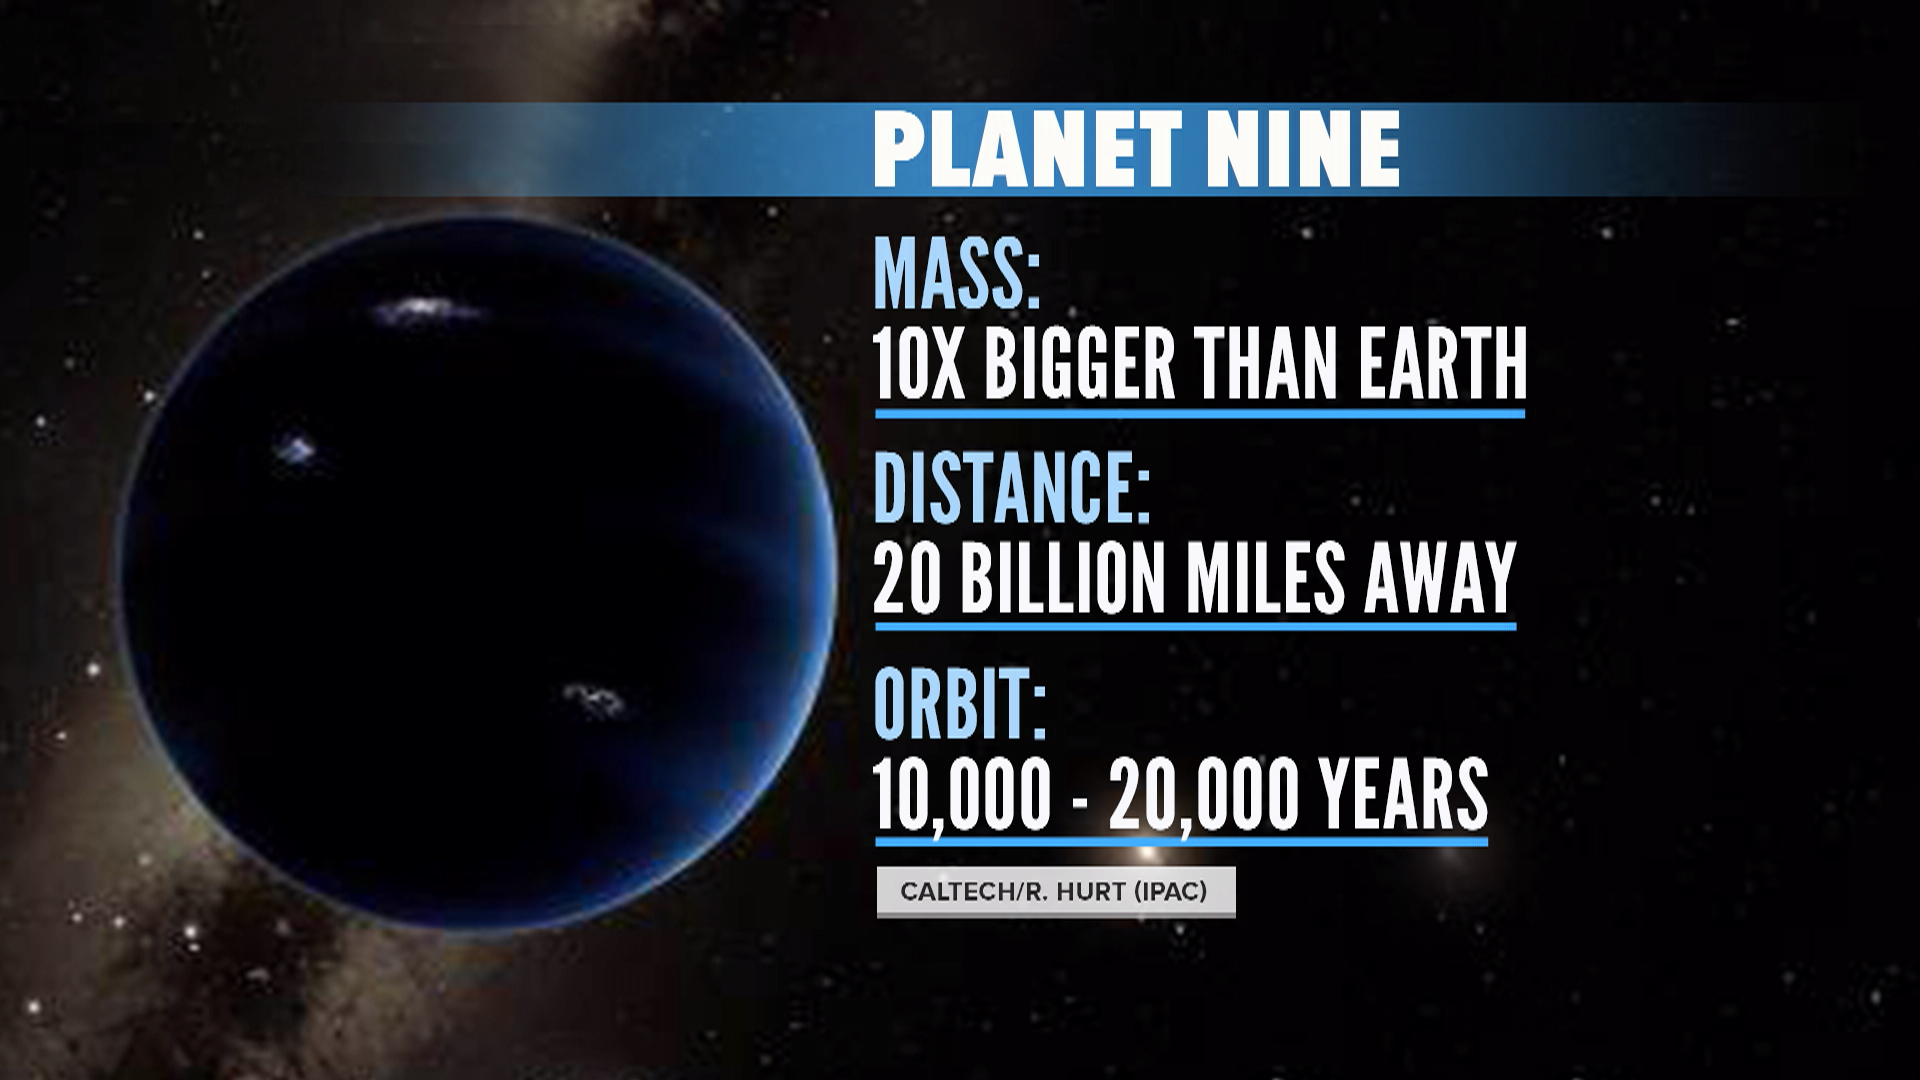 Επιπλέον στοιχεία που υποστηρίζουν την ύπαρξη του Planet Nine